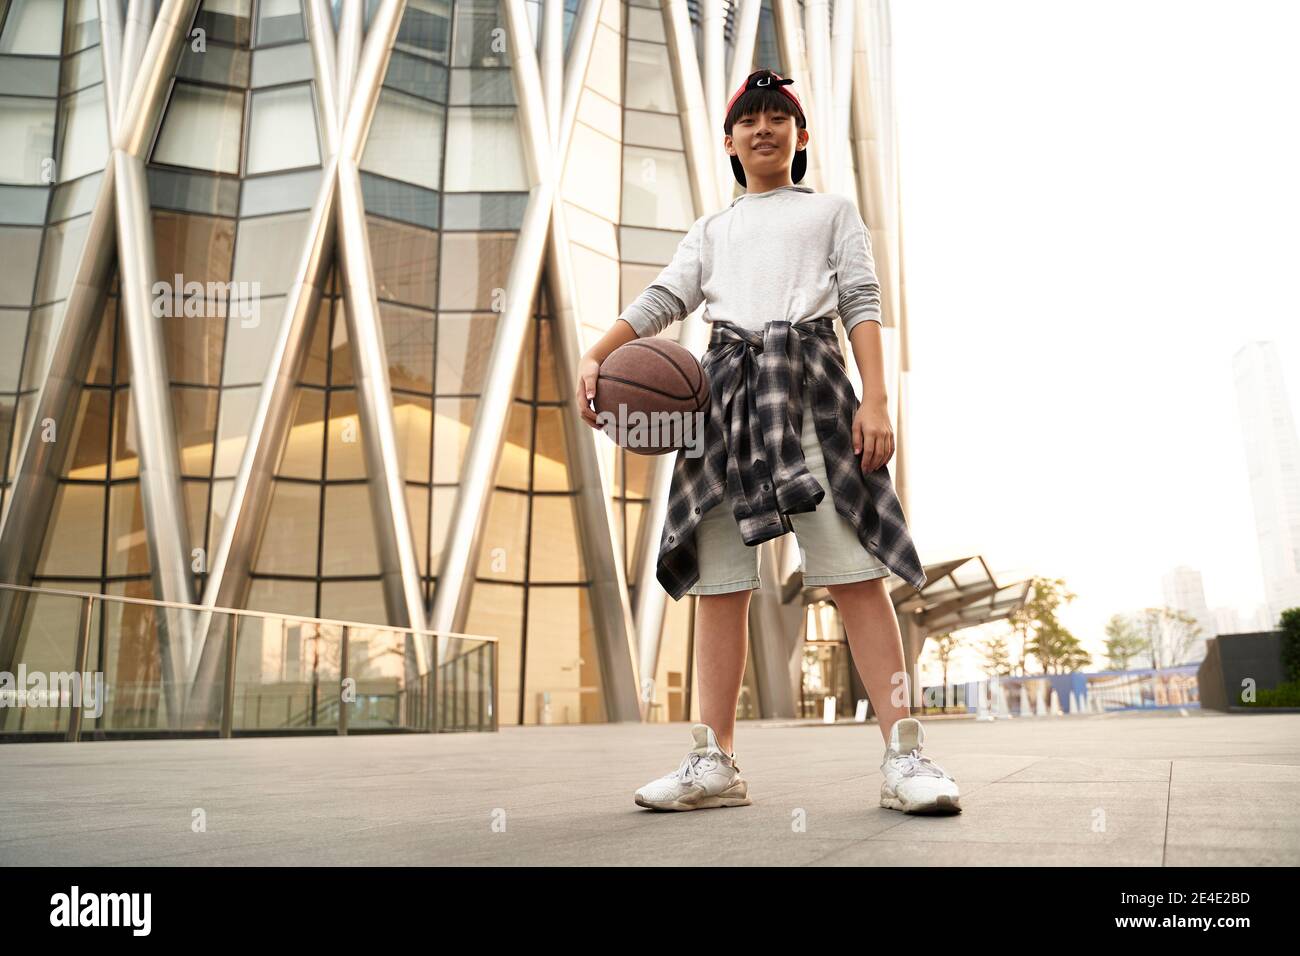 retrato en ángulo bajo al aire libre de un baloncesto asiático adolescente de quince años reproductor Foto de stock